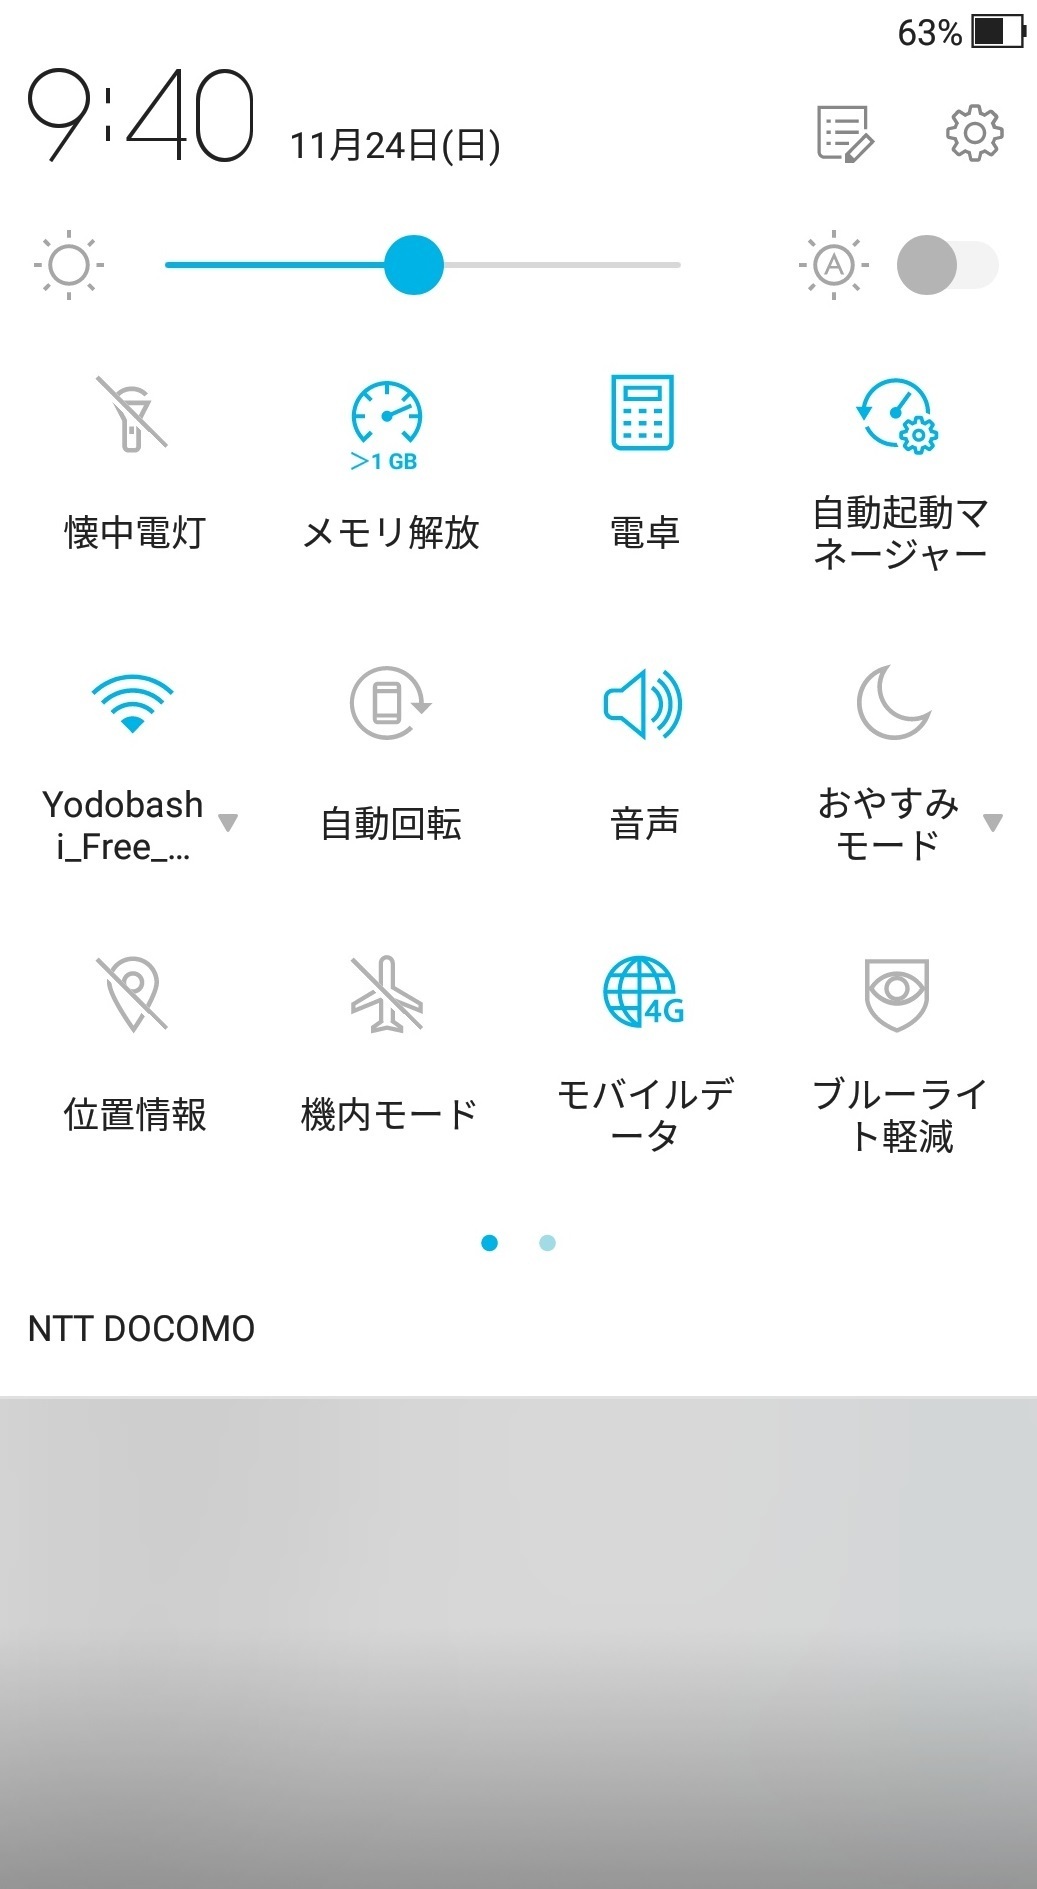 大阪梅田wifi ヨドバシ梅田とリンクス梅田linksumedaスマホで Wifi無料 大阪アクセスポイントスマホで接続したい設定は